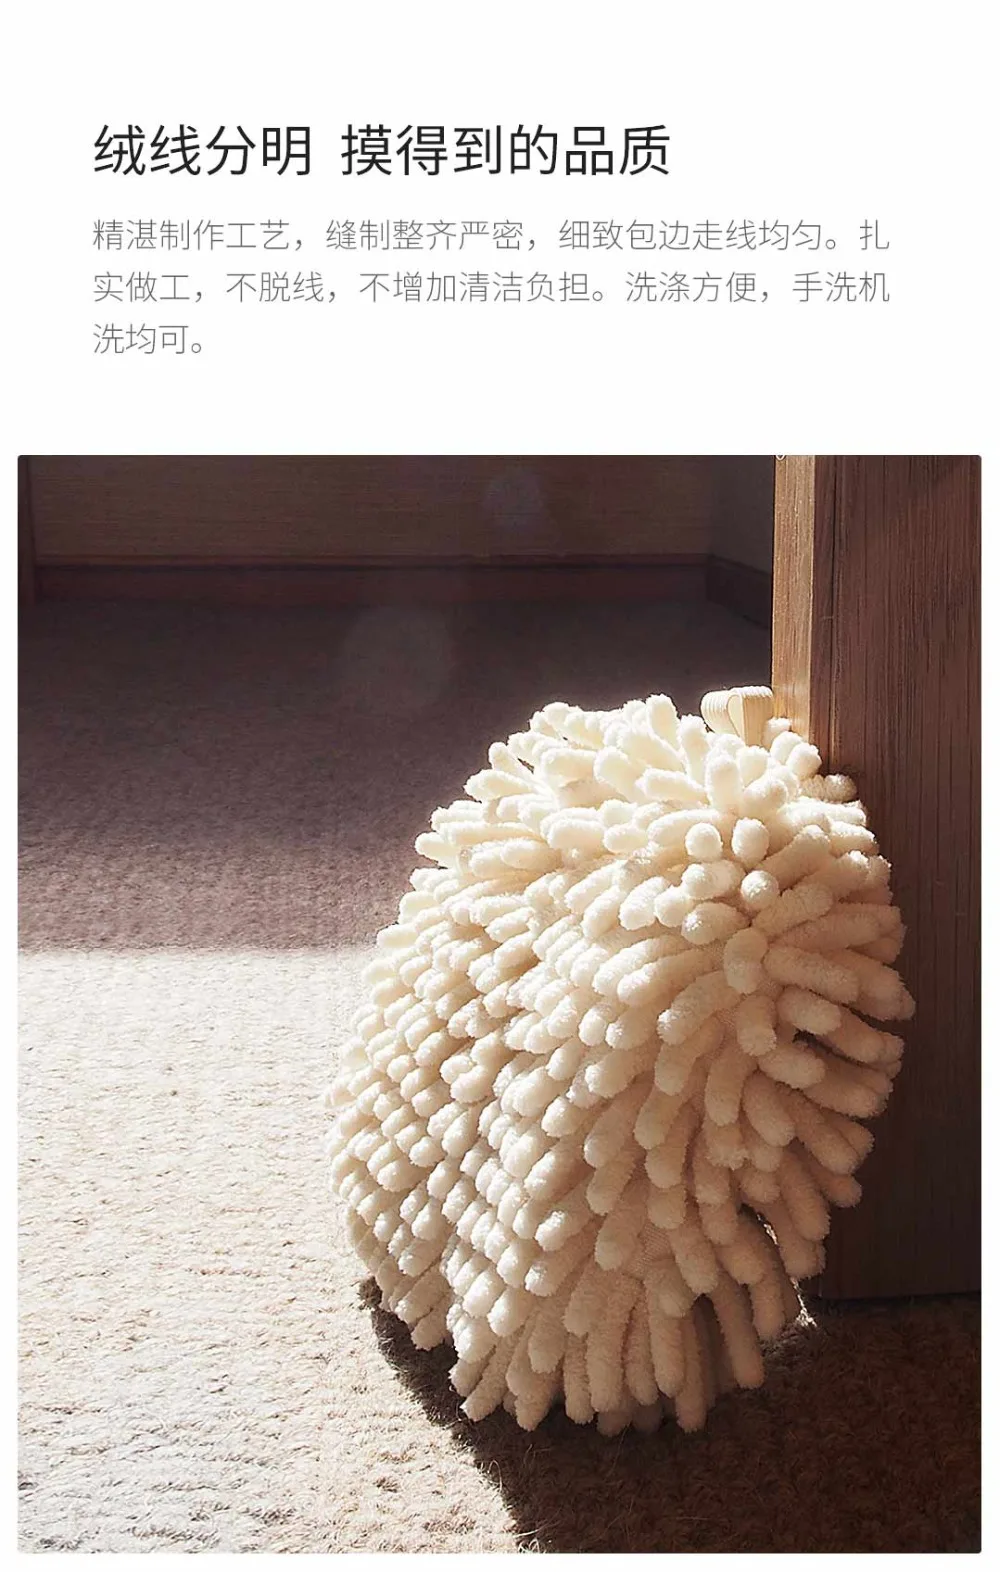 Xiaomi Youpin протирать полотенца для рук мяч супер абсорбент быстро сохнет мягкий на ощупь предотвратить рост бактерий здоровье для ребенка